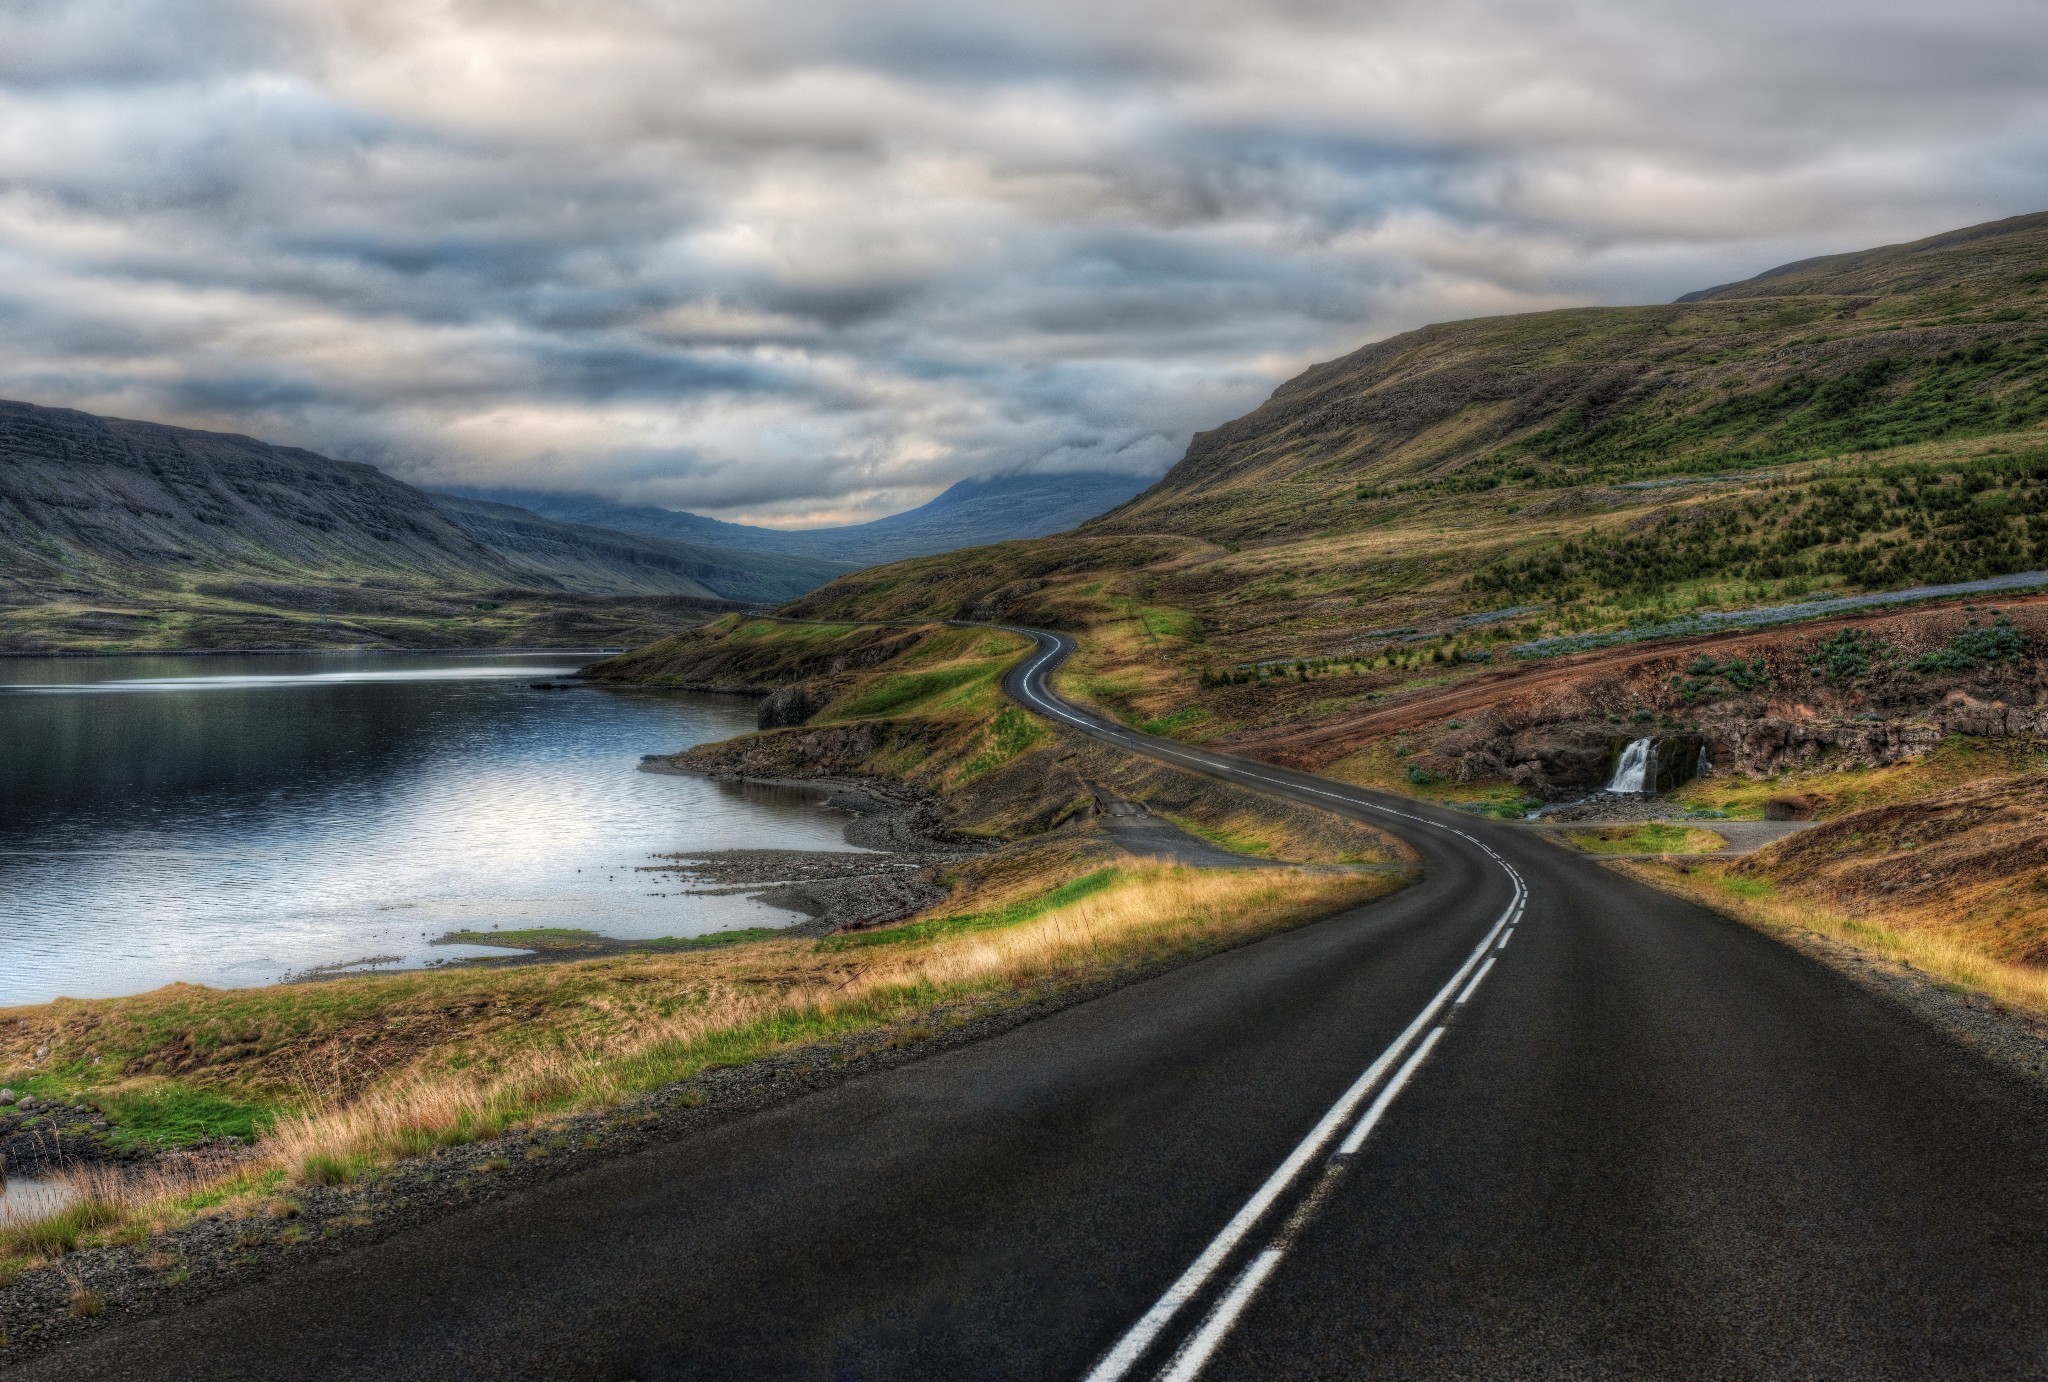 General 2048x1382 road HDR river hills landscape long road asphalt nature outdoors Iceland Trey Ratcliff